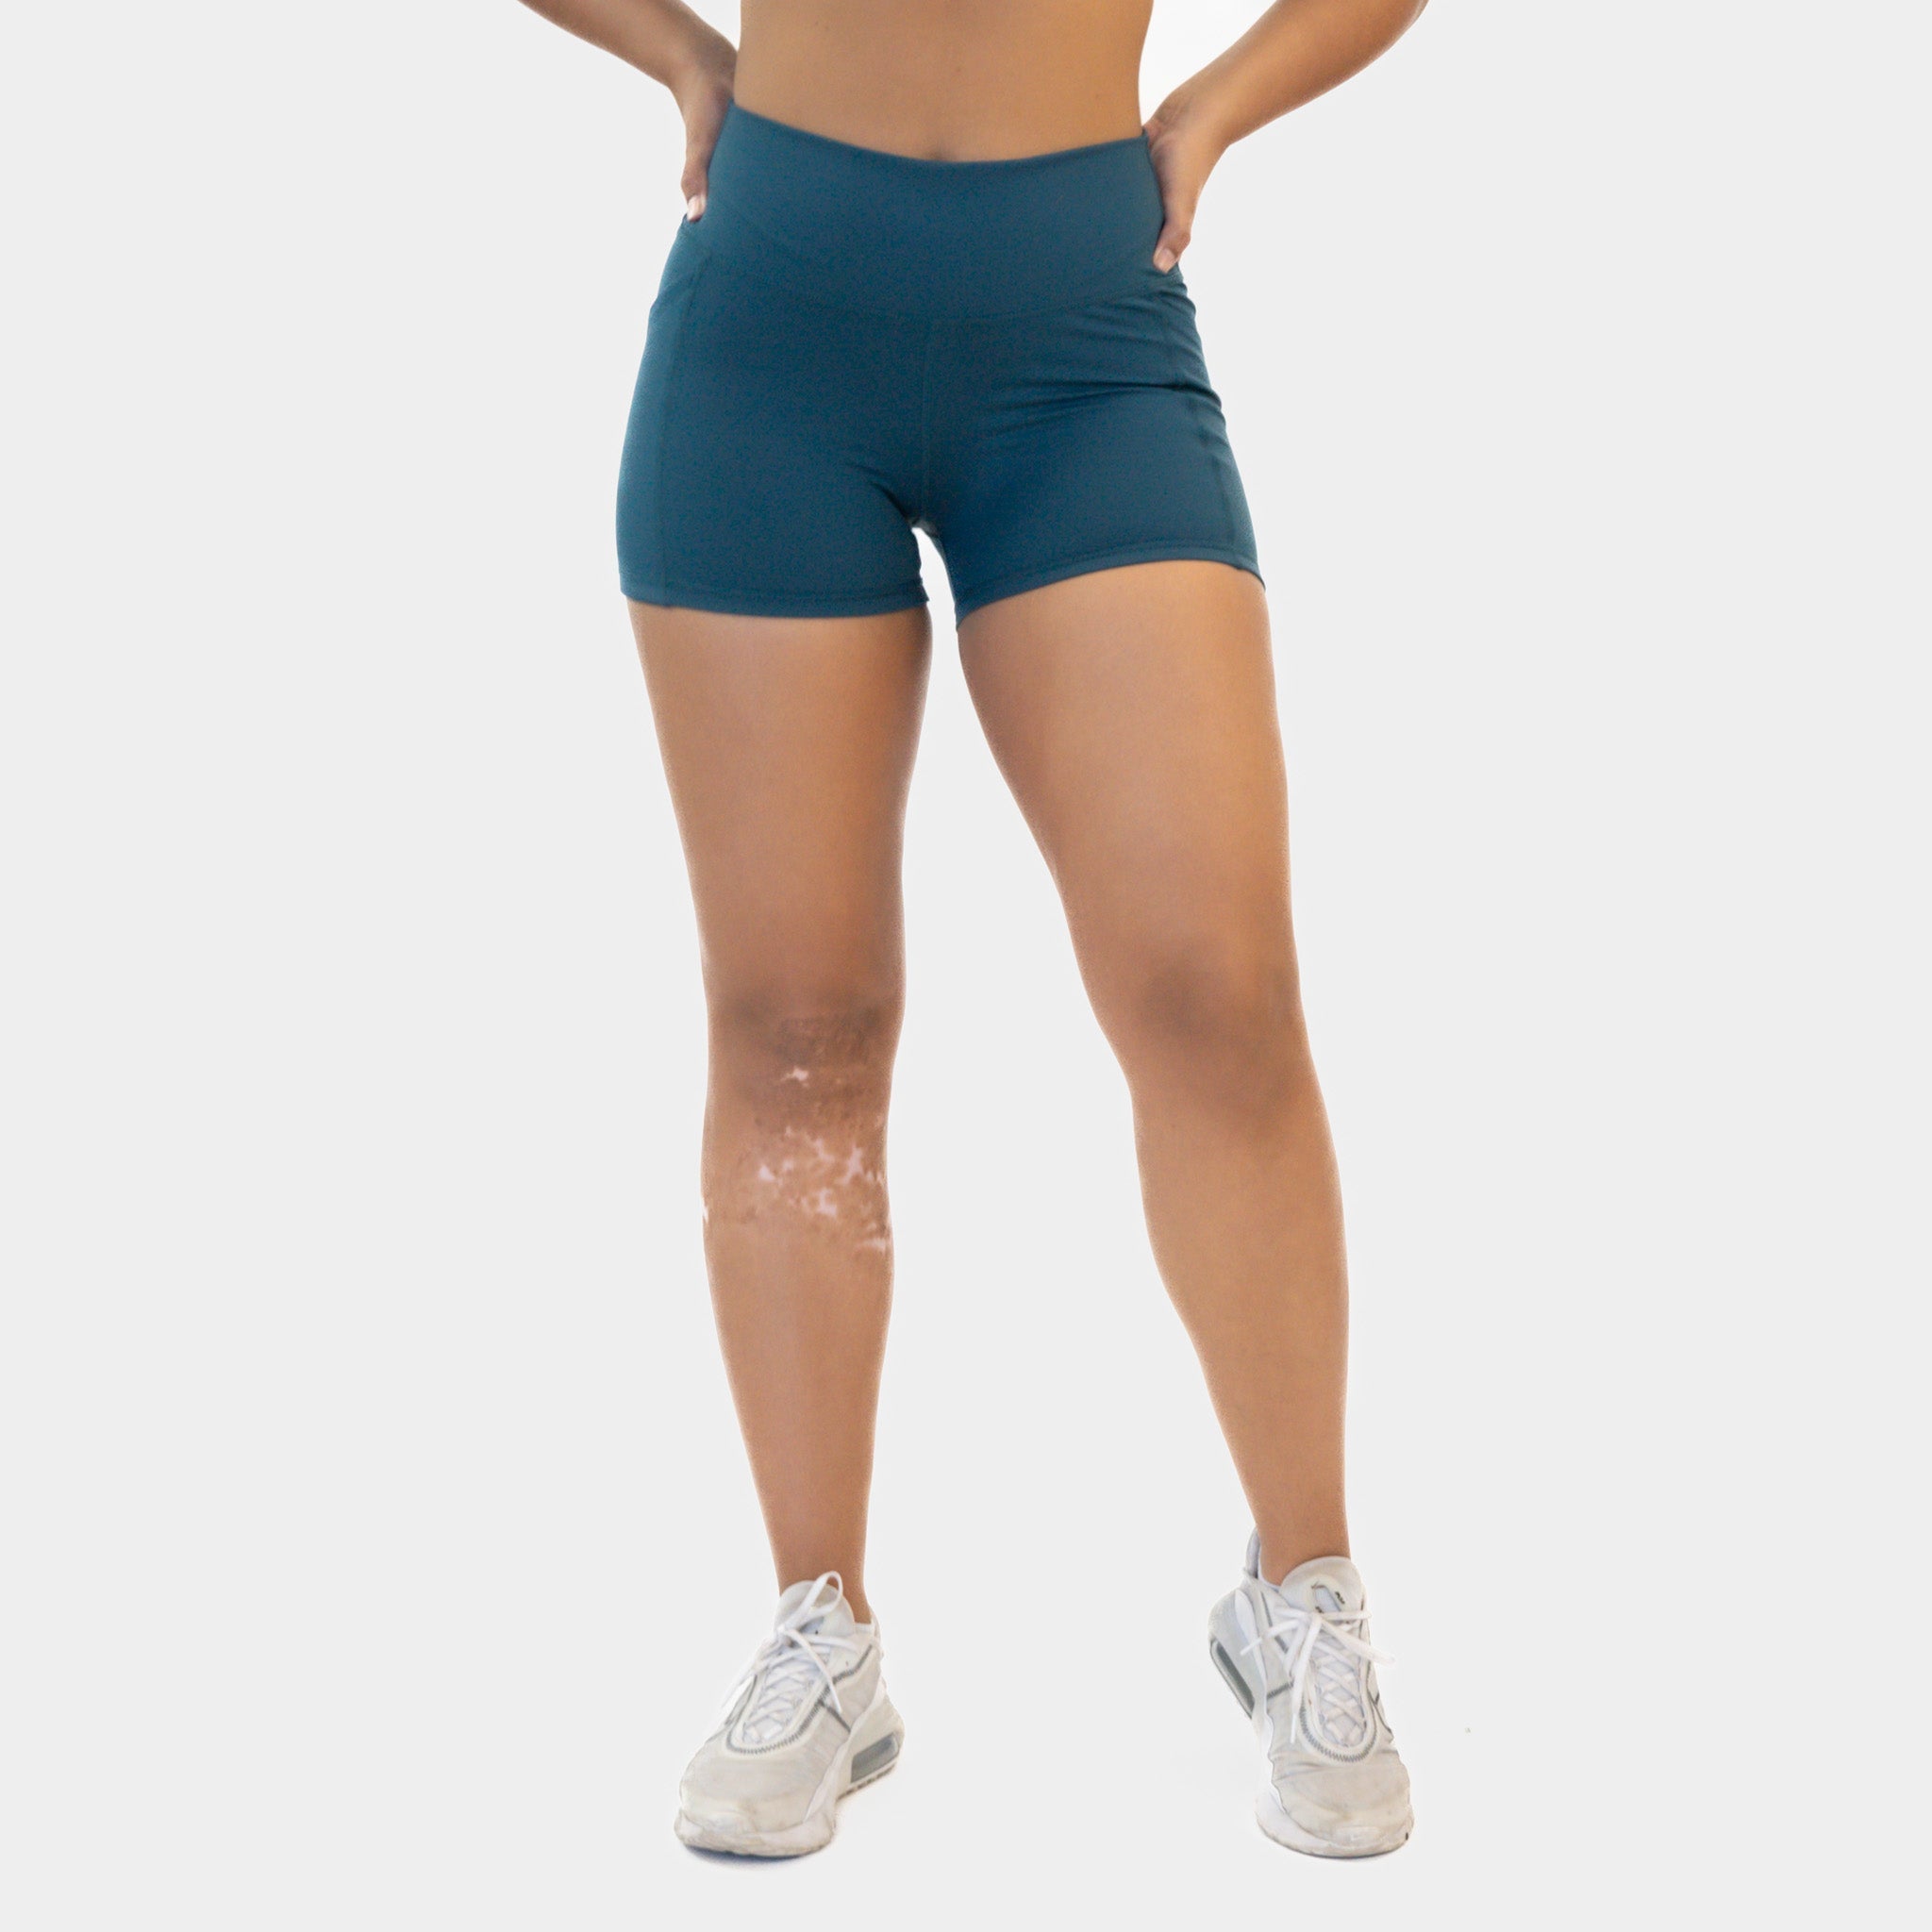 Rio Compressive Shorts, Senita Athletics, Squat Proof